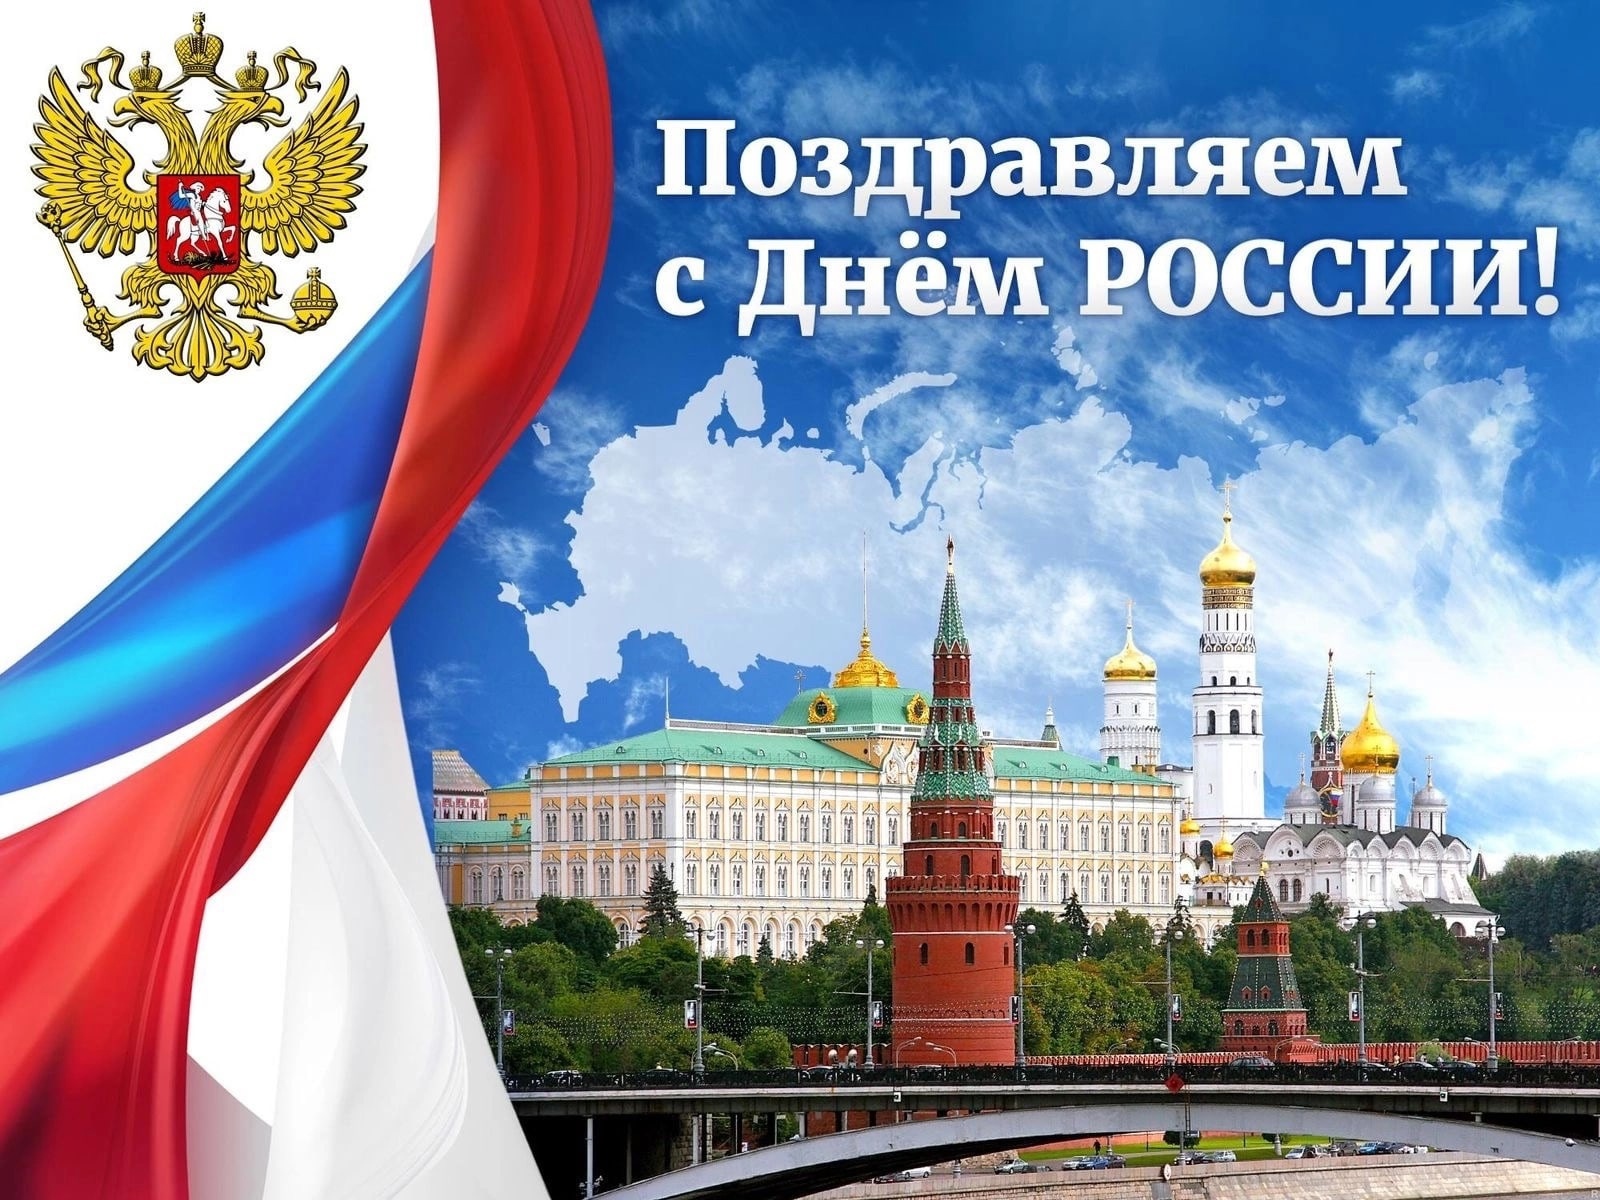 Искренне поздравляем вас с праздником - Днем России!